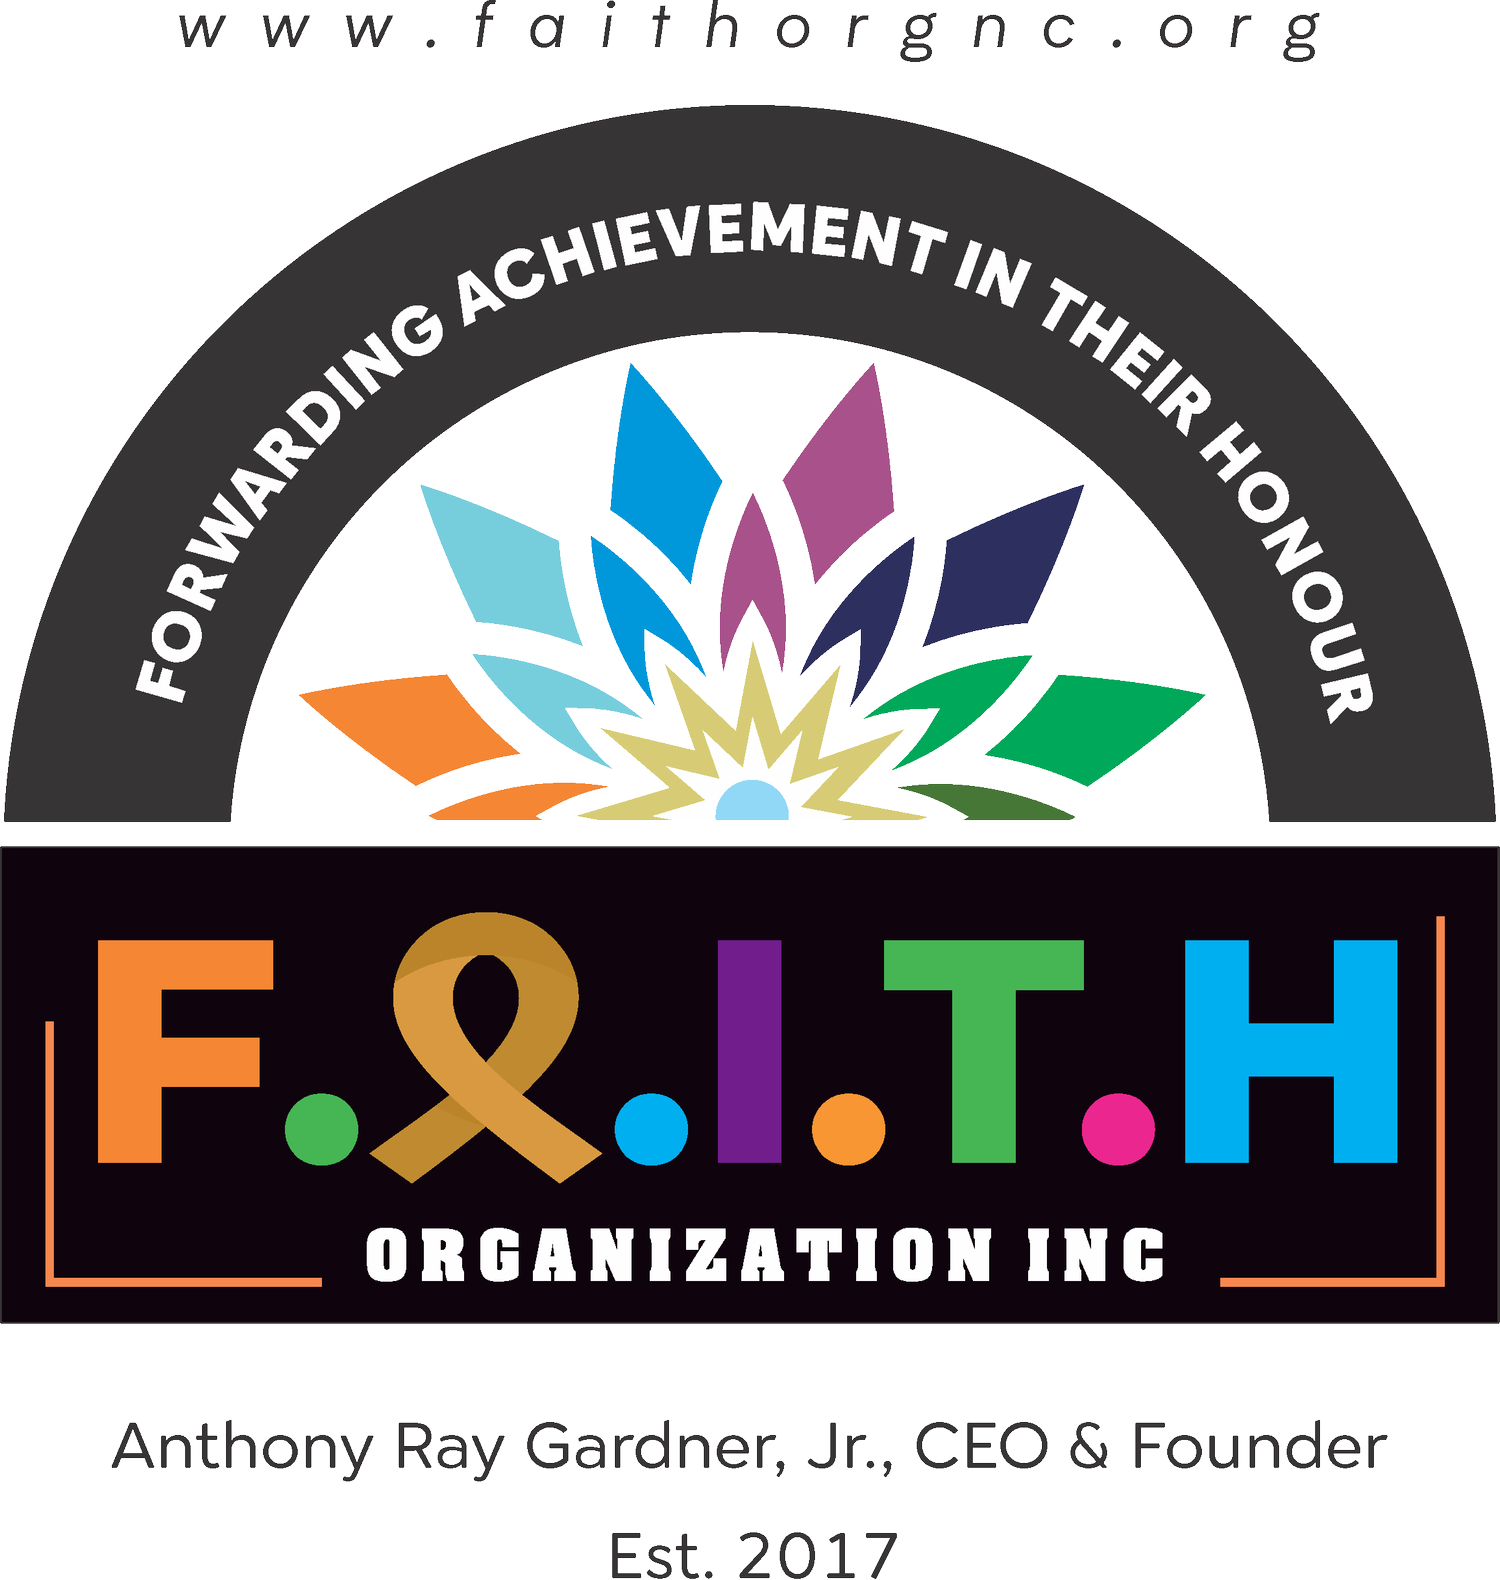 F.A.I.T.H Organization Inc.